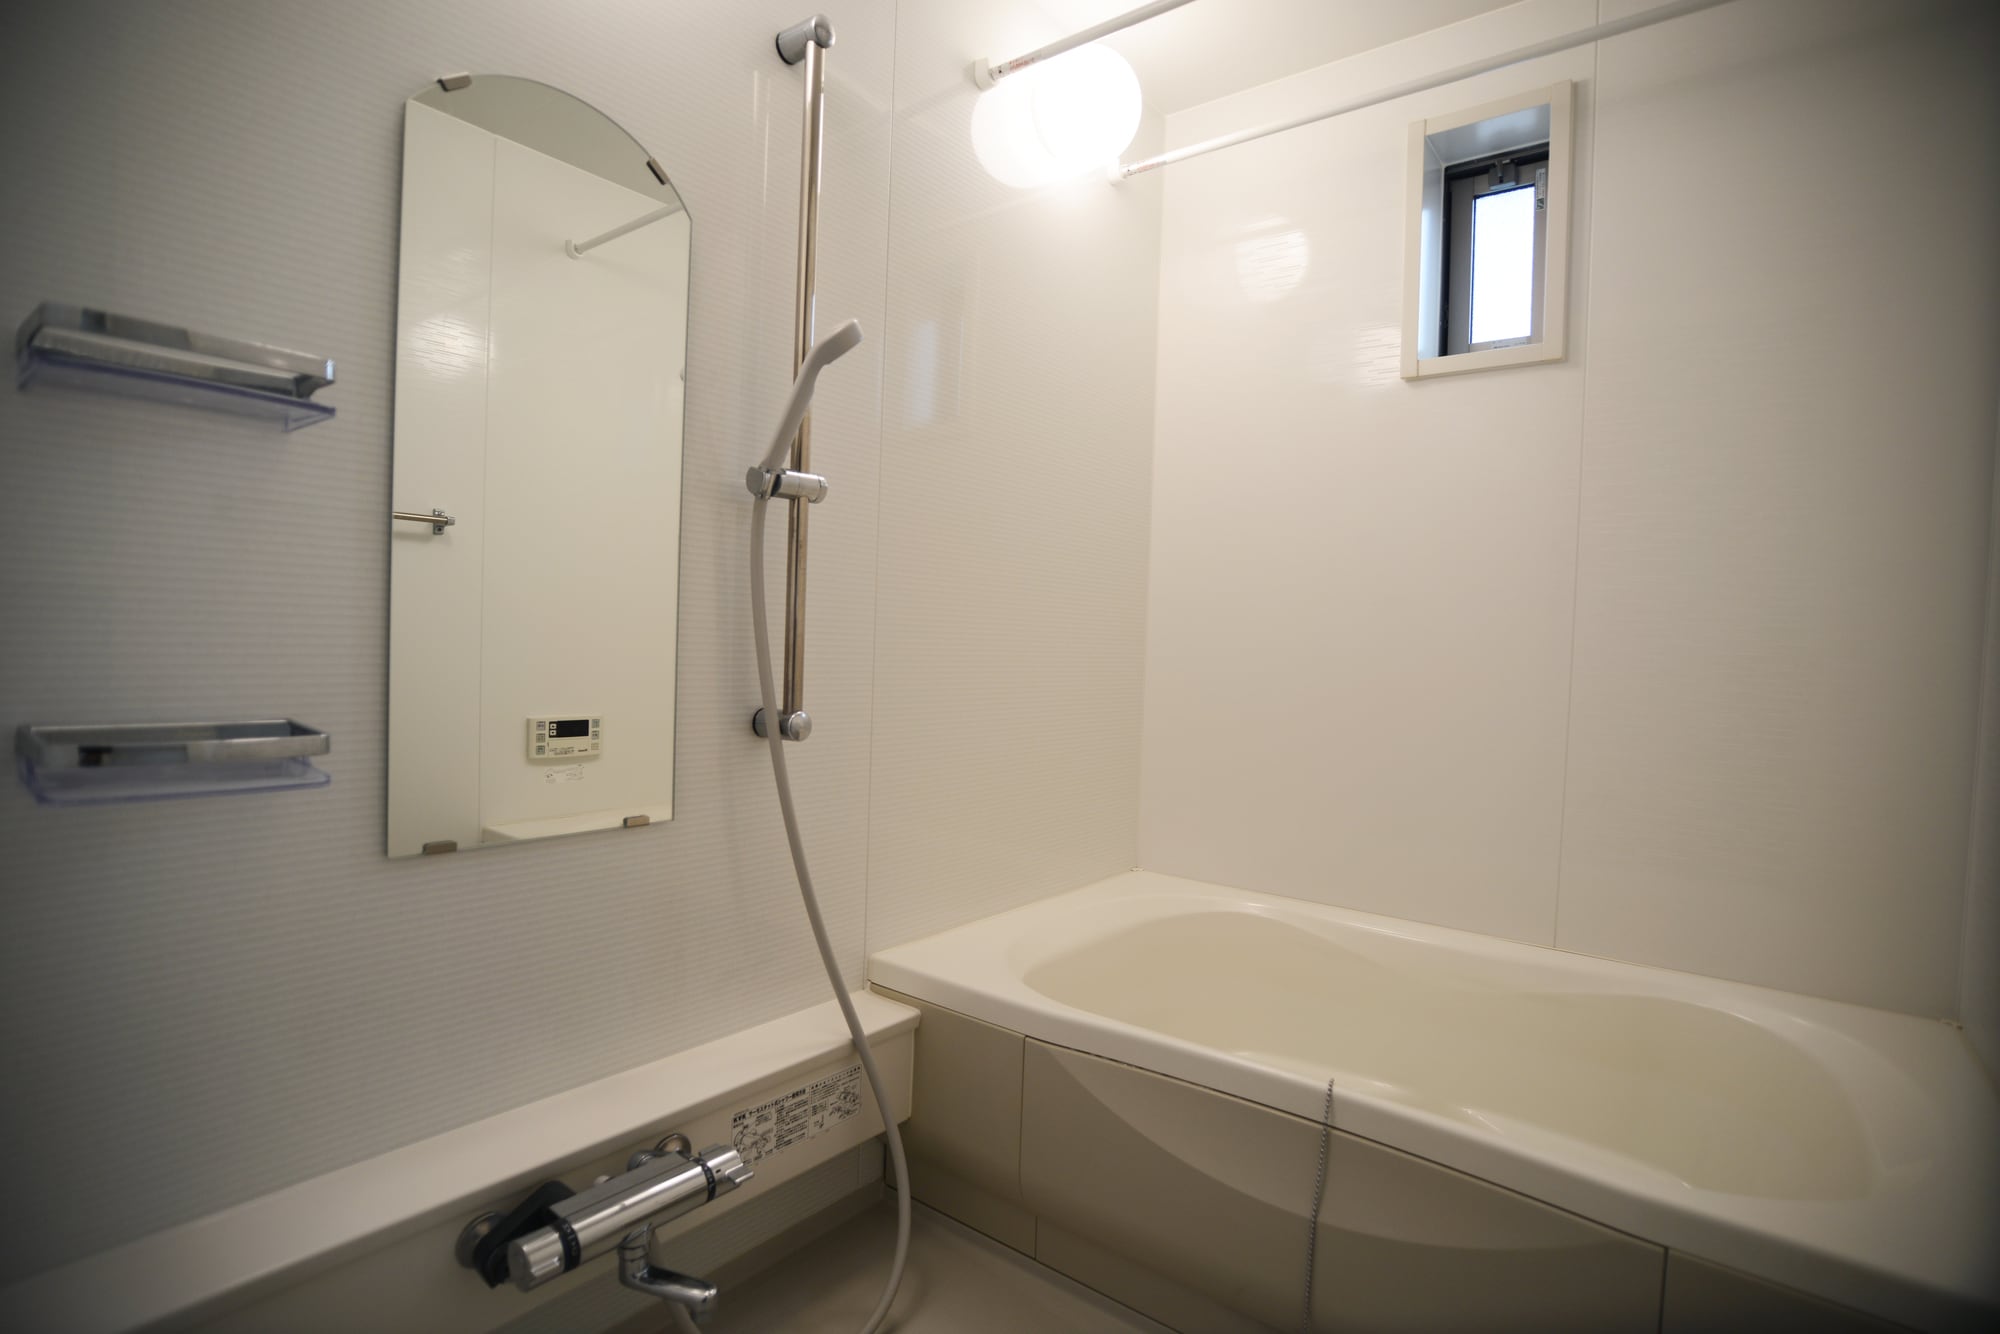 お風呂交換(100万円以下)は浴槽の交換やユニットバスへのリフォームが可能